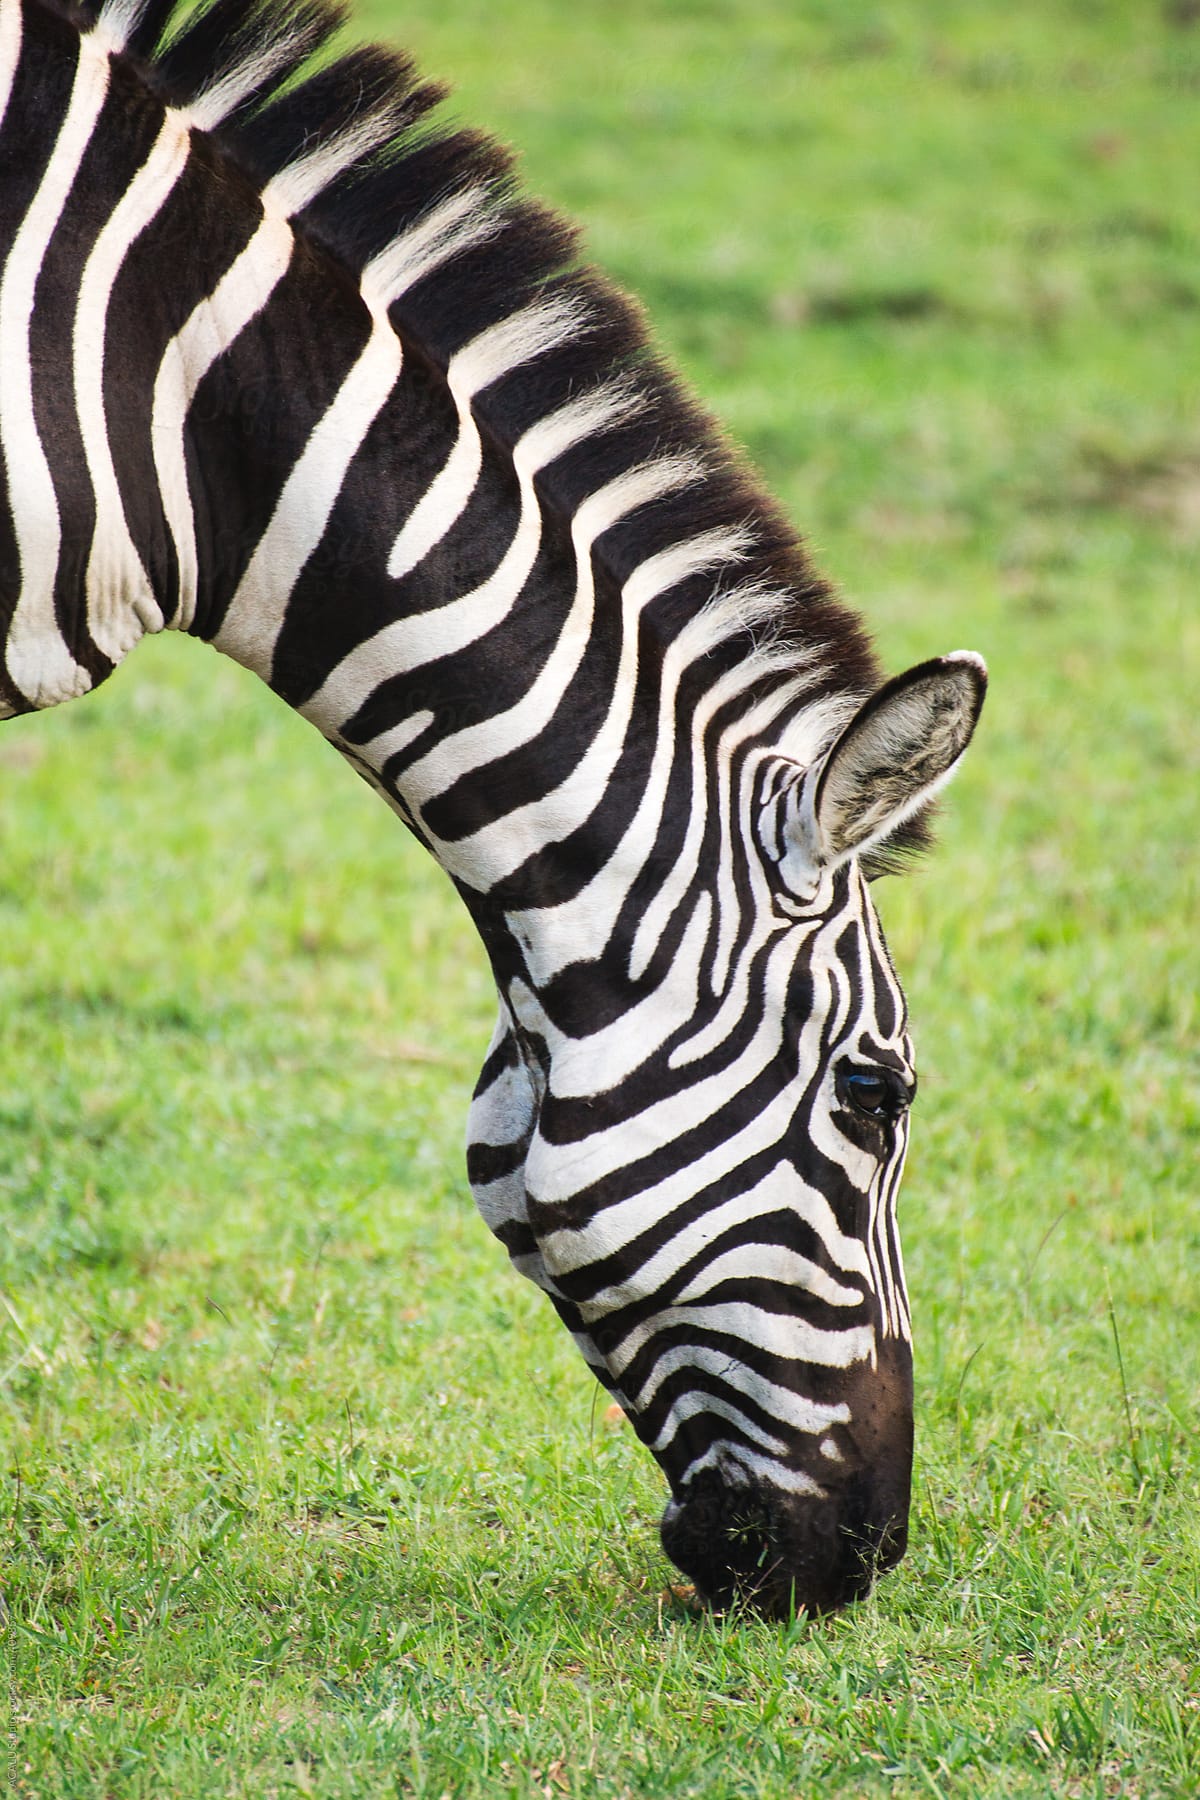 Zebra eating